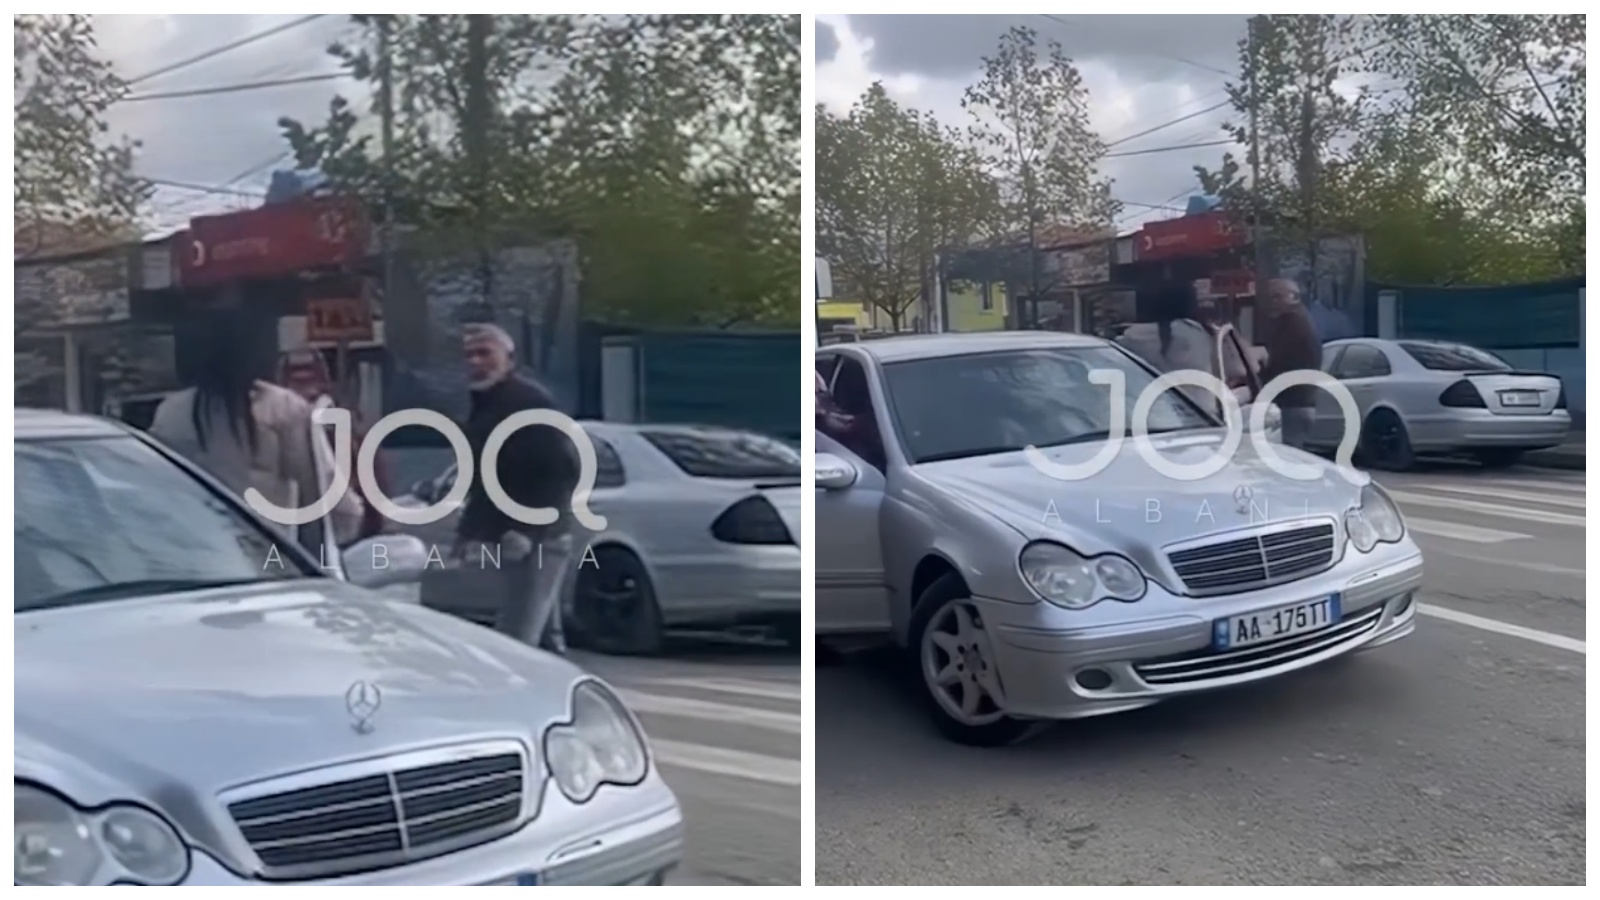 ÇUDIRA SHQIPTARE/ Gruaja me makinë përplas qytetarin në vijat e bardha, del nga automjeti dhe e dhunon